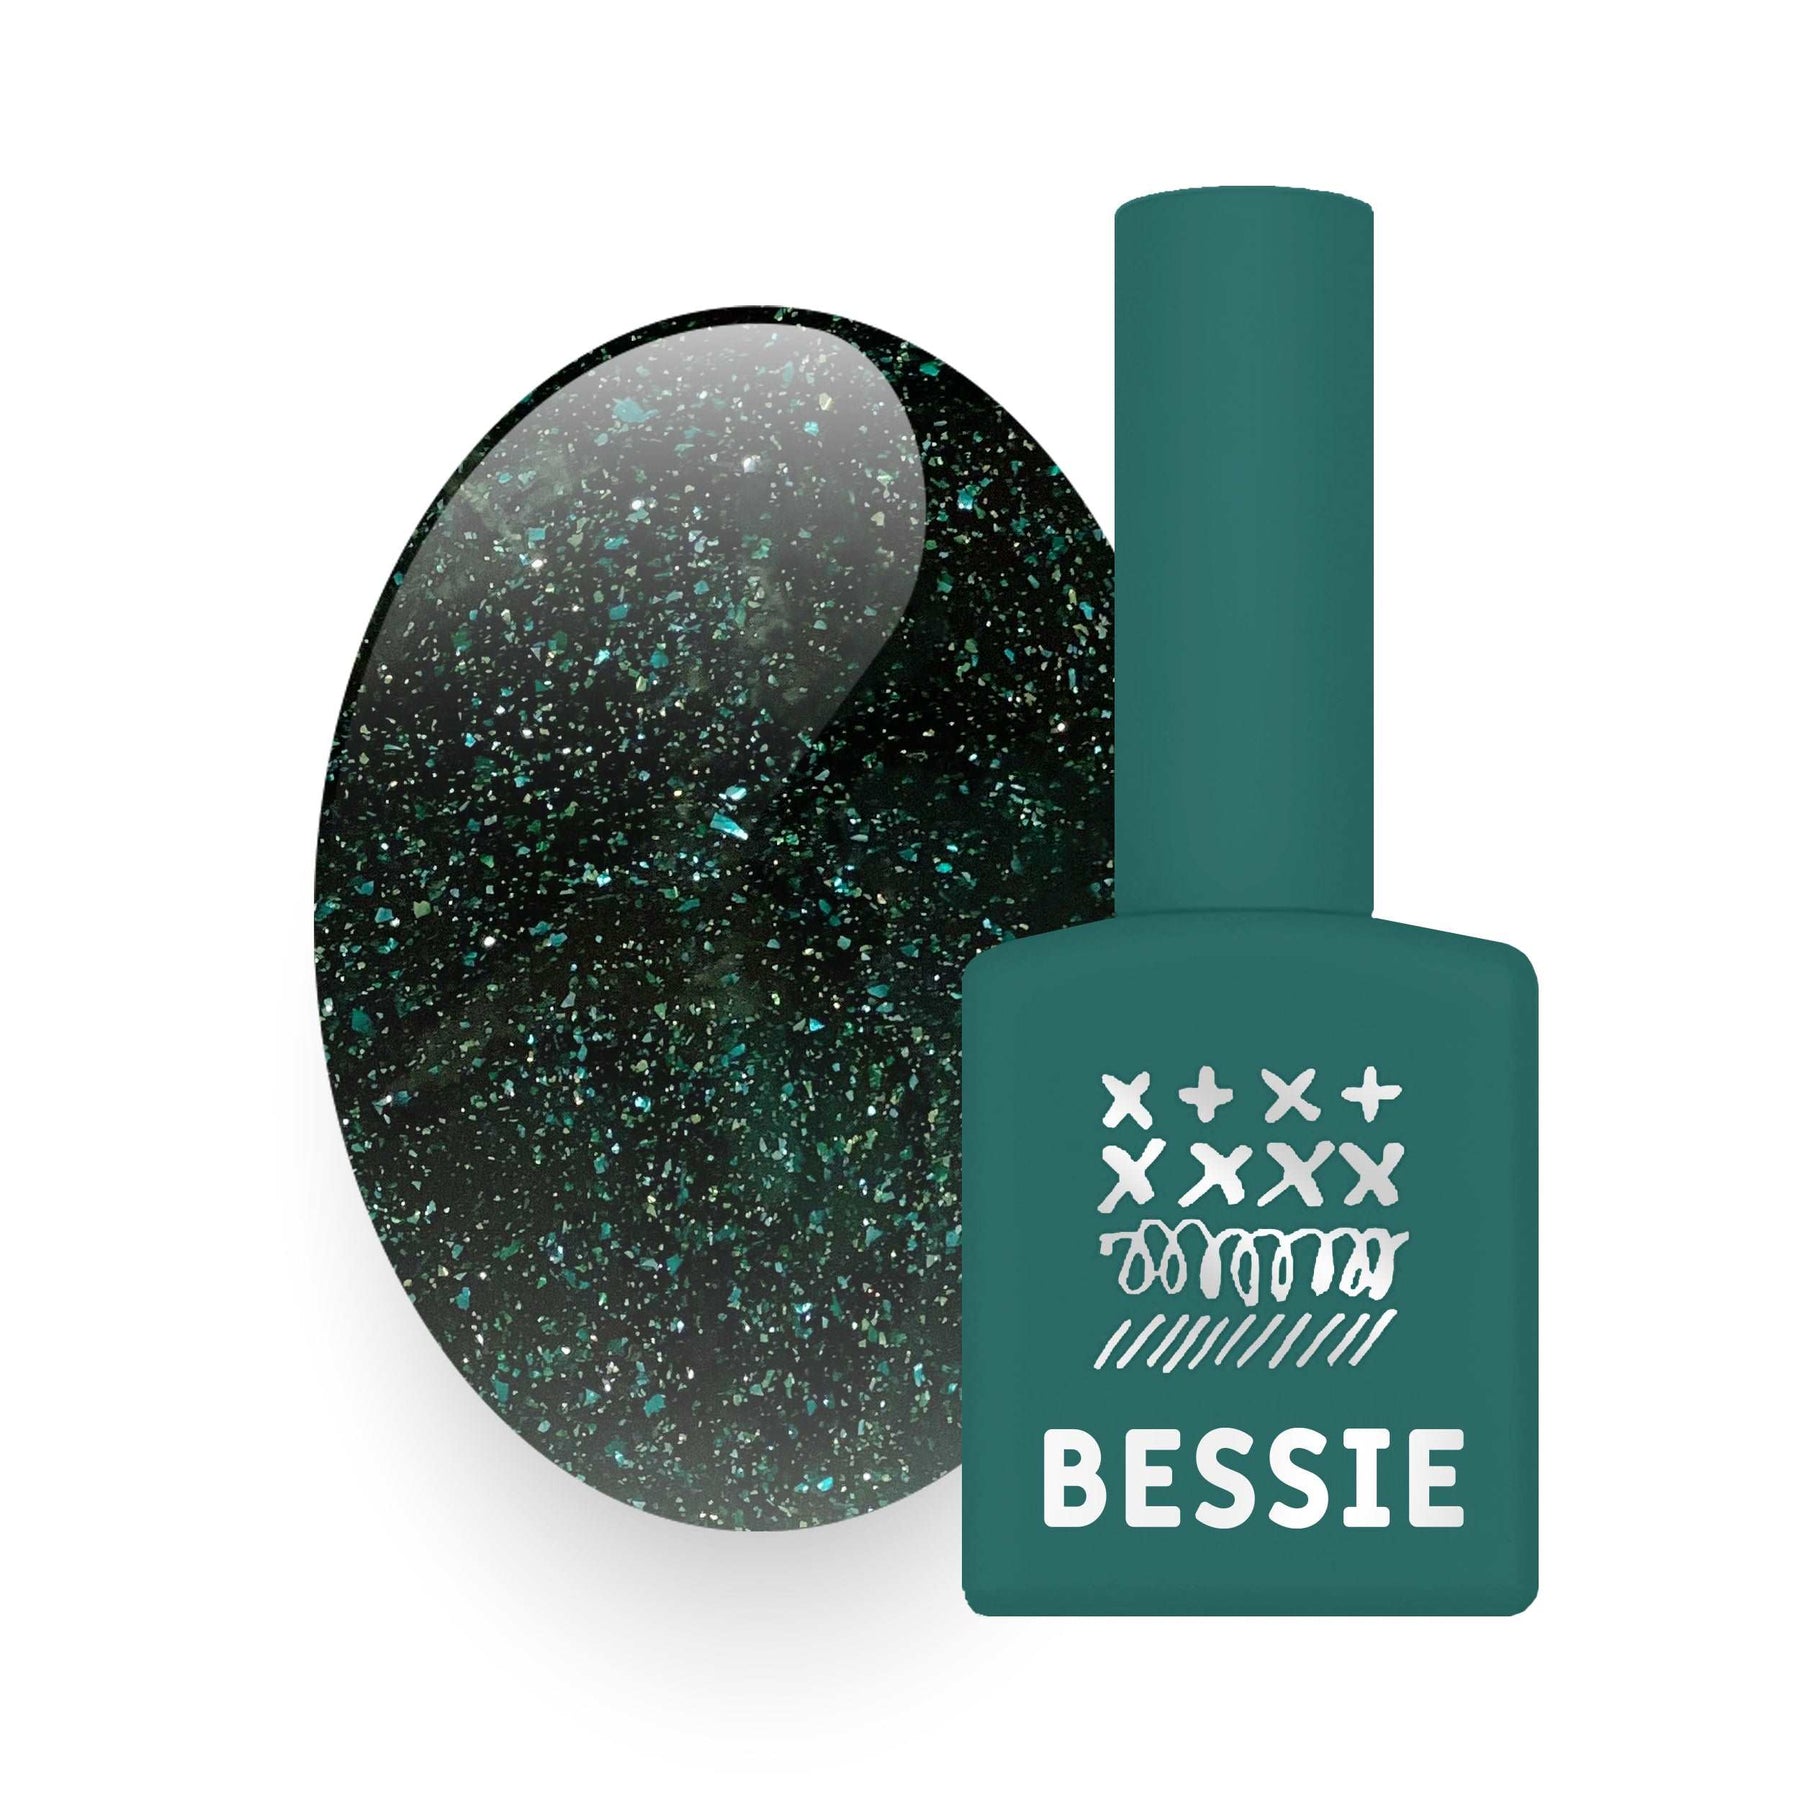 Bessie Tweed Gel Collection - 14pc set / 1pc